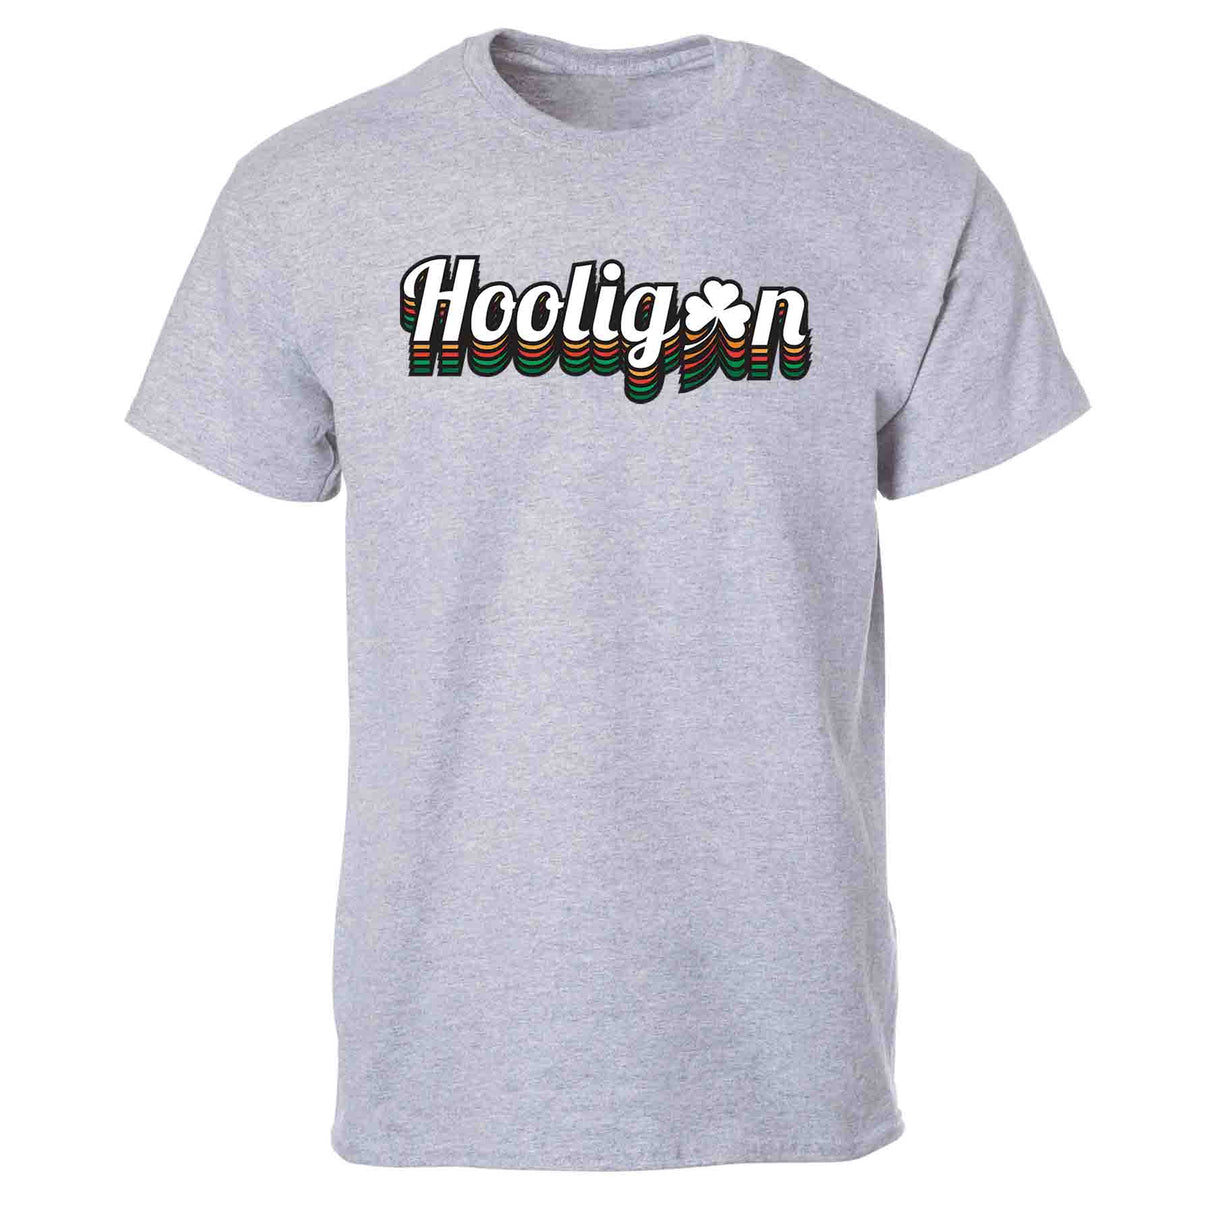 Irish Hooligan T-Shirt - Creative Irish Gifts